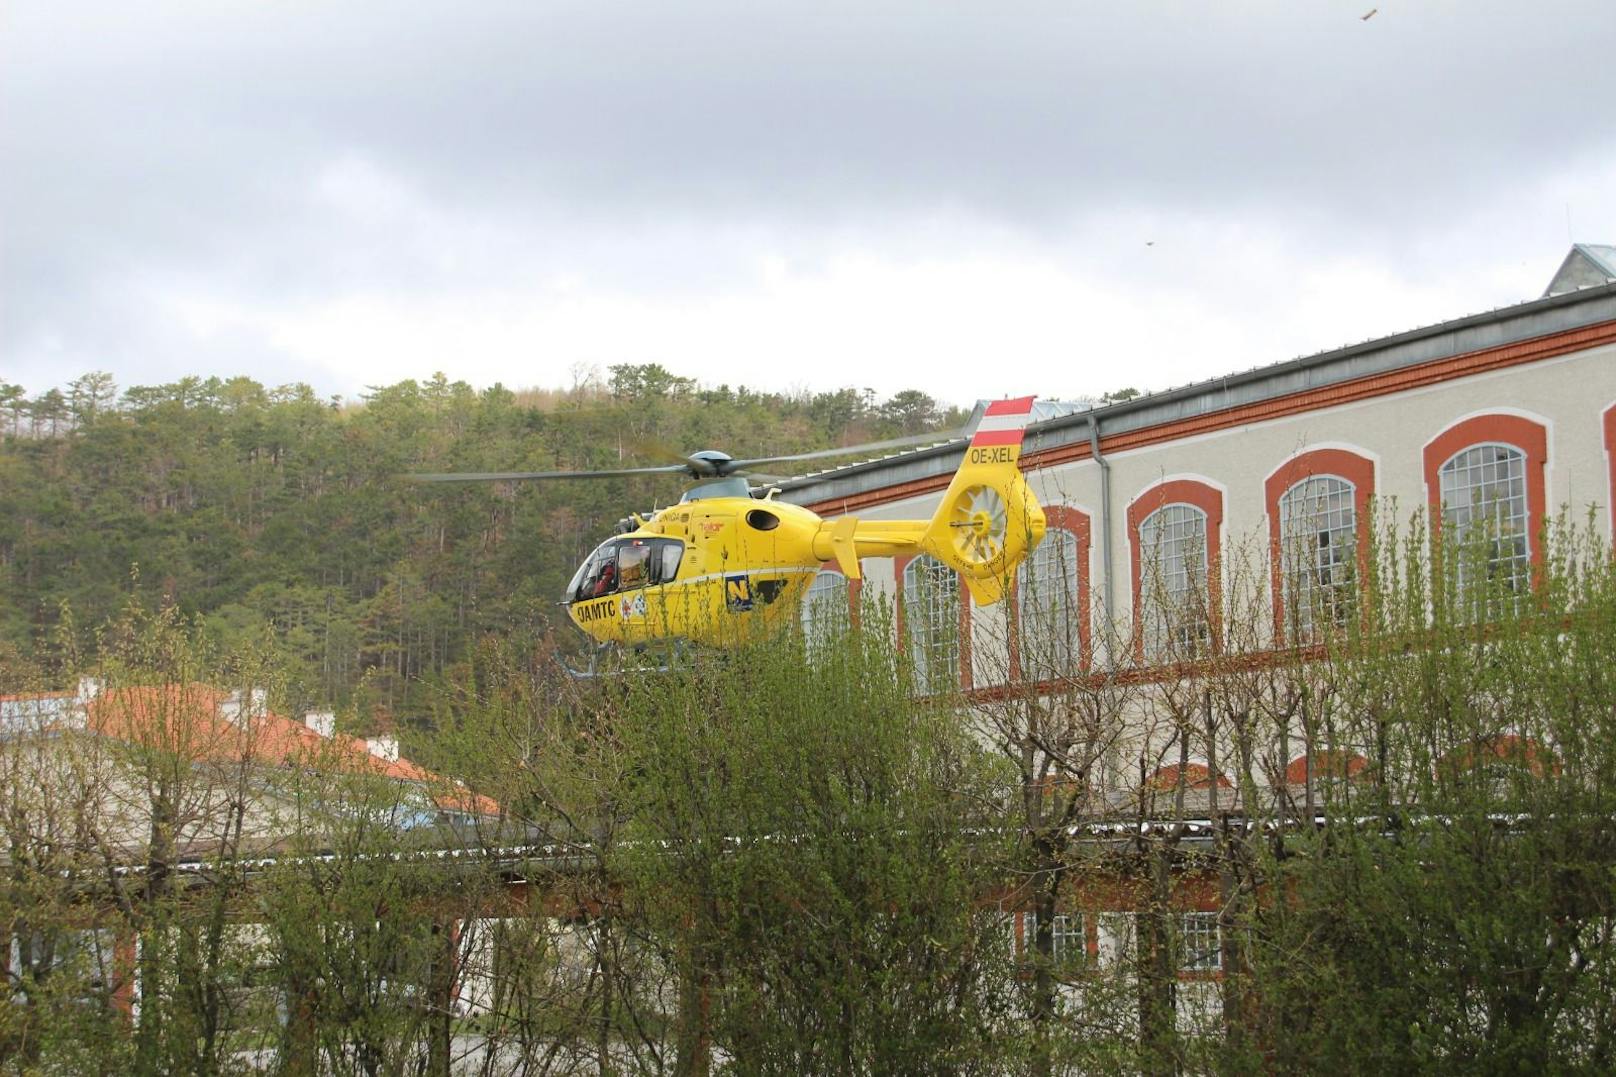 ... Rettungshubschrauber "Christophorus 3" ins Spital geflogen.